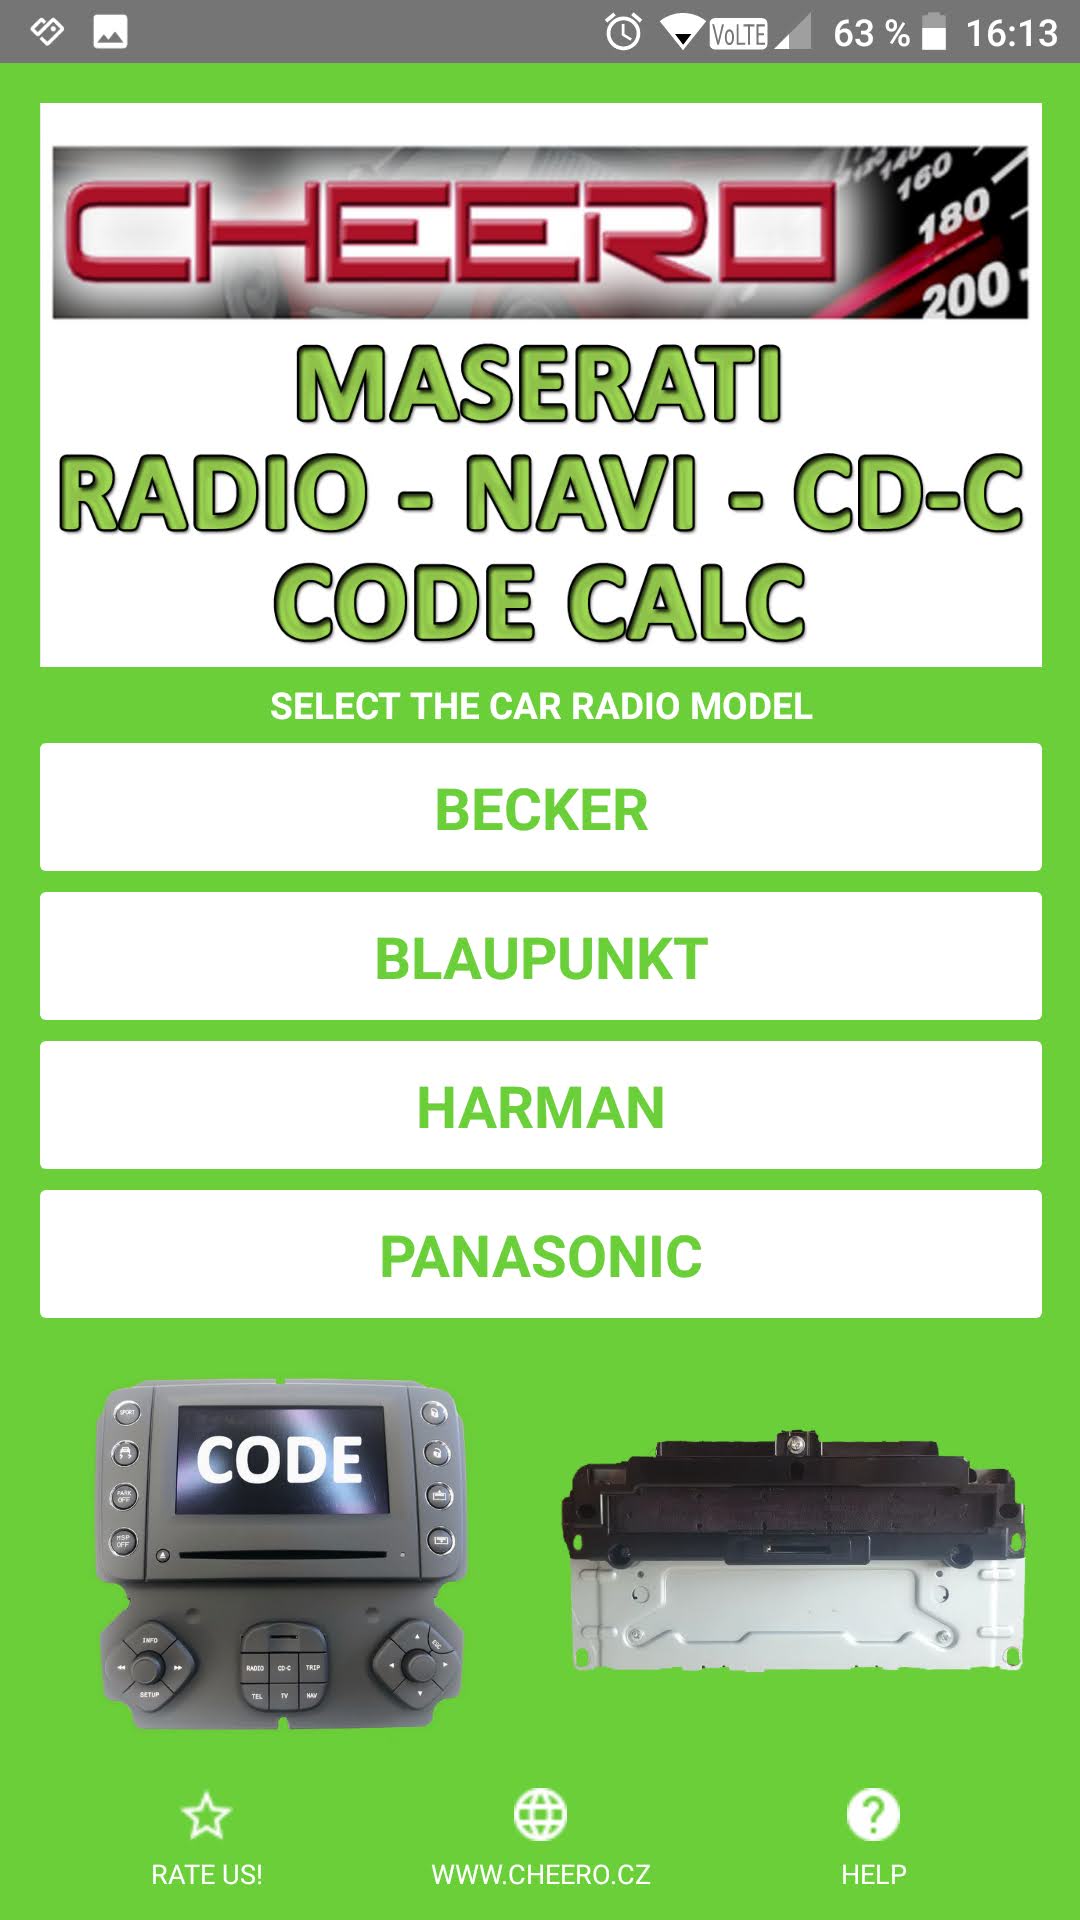 RADIO CODE FOR MASERATI BLAUPUNKT M139 BECKER INFOTAINMENT HARMAN VP4 PANASONIC